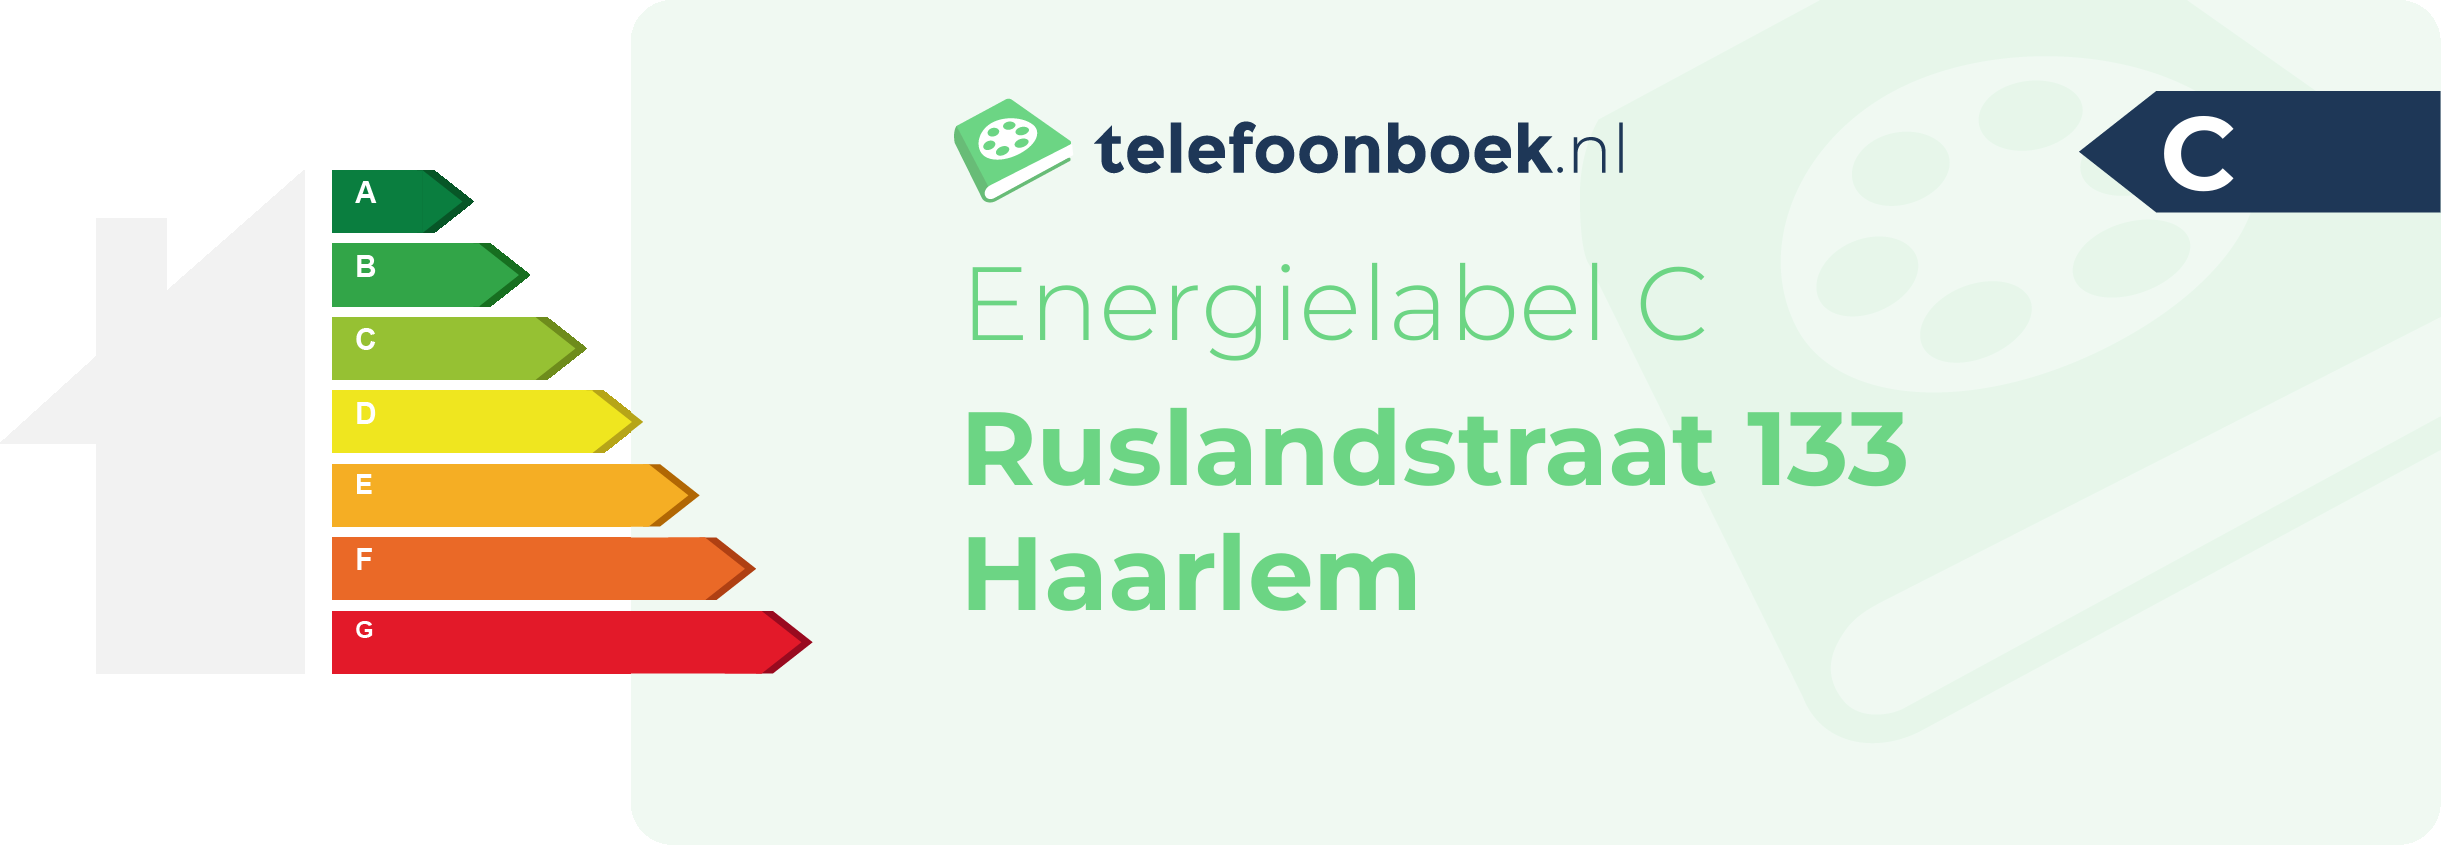 Energielabel Ruslandstraat 133 Haarlem